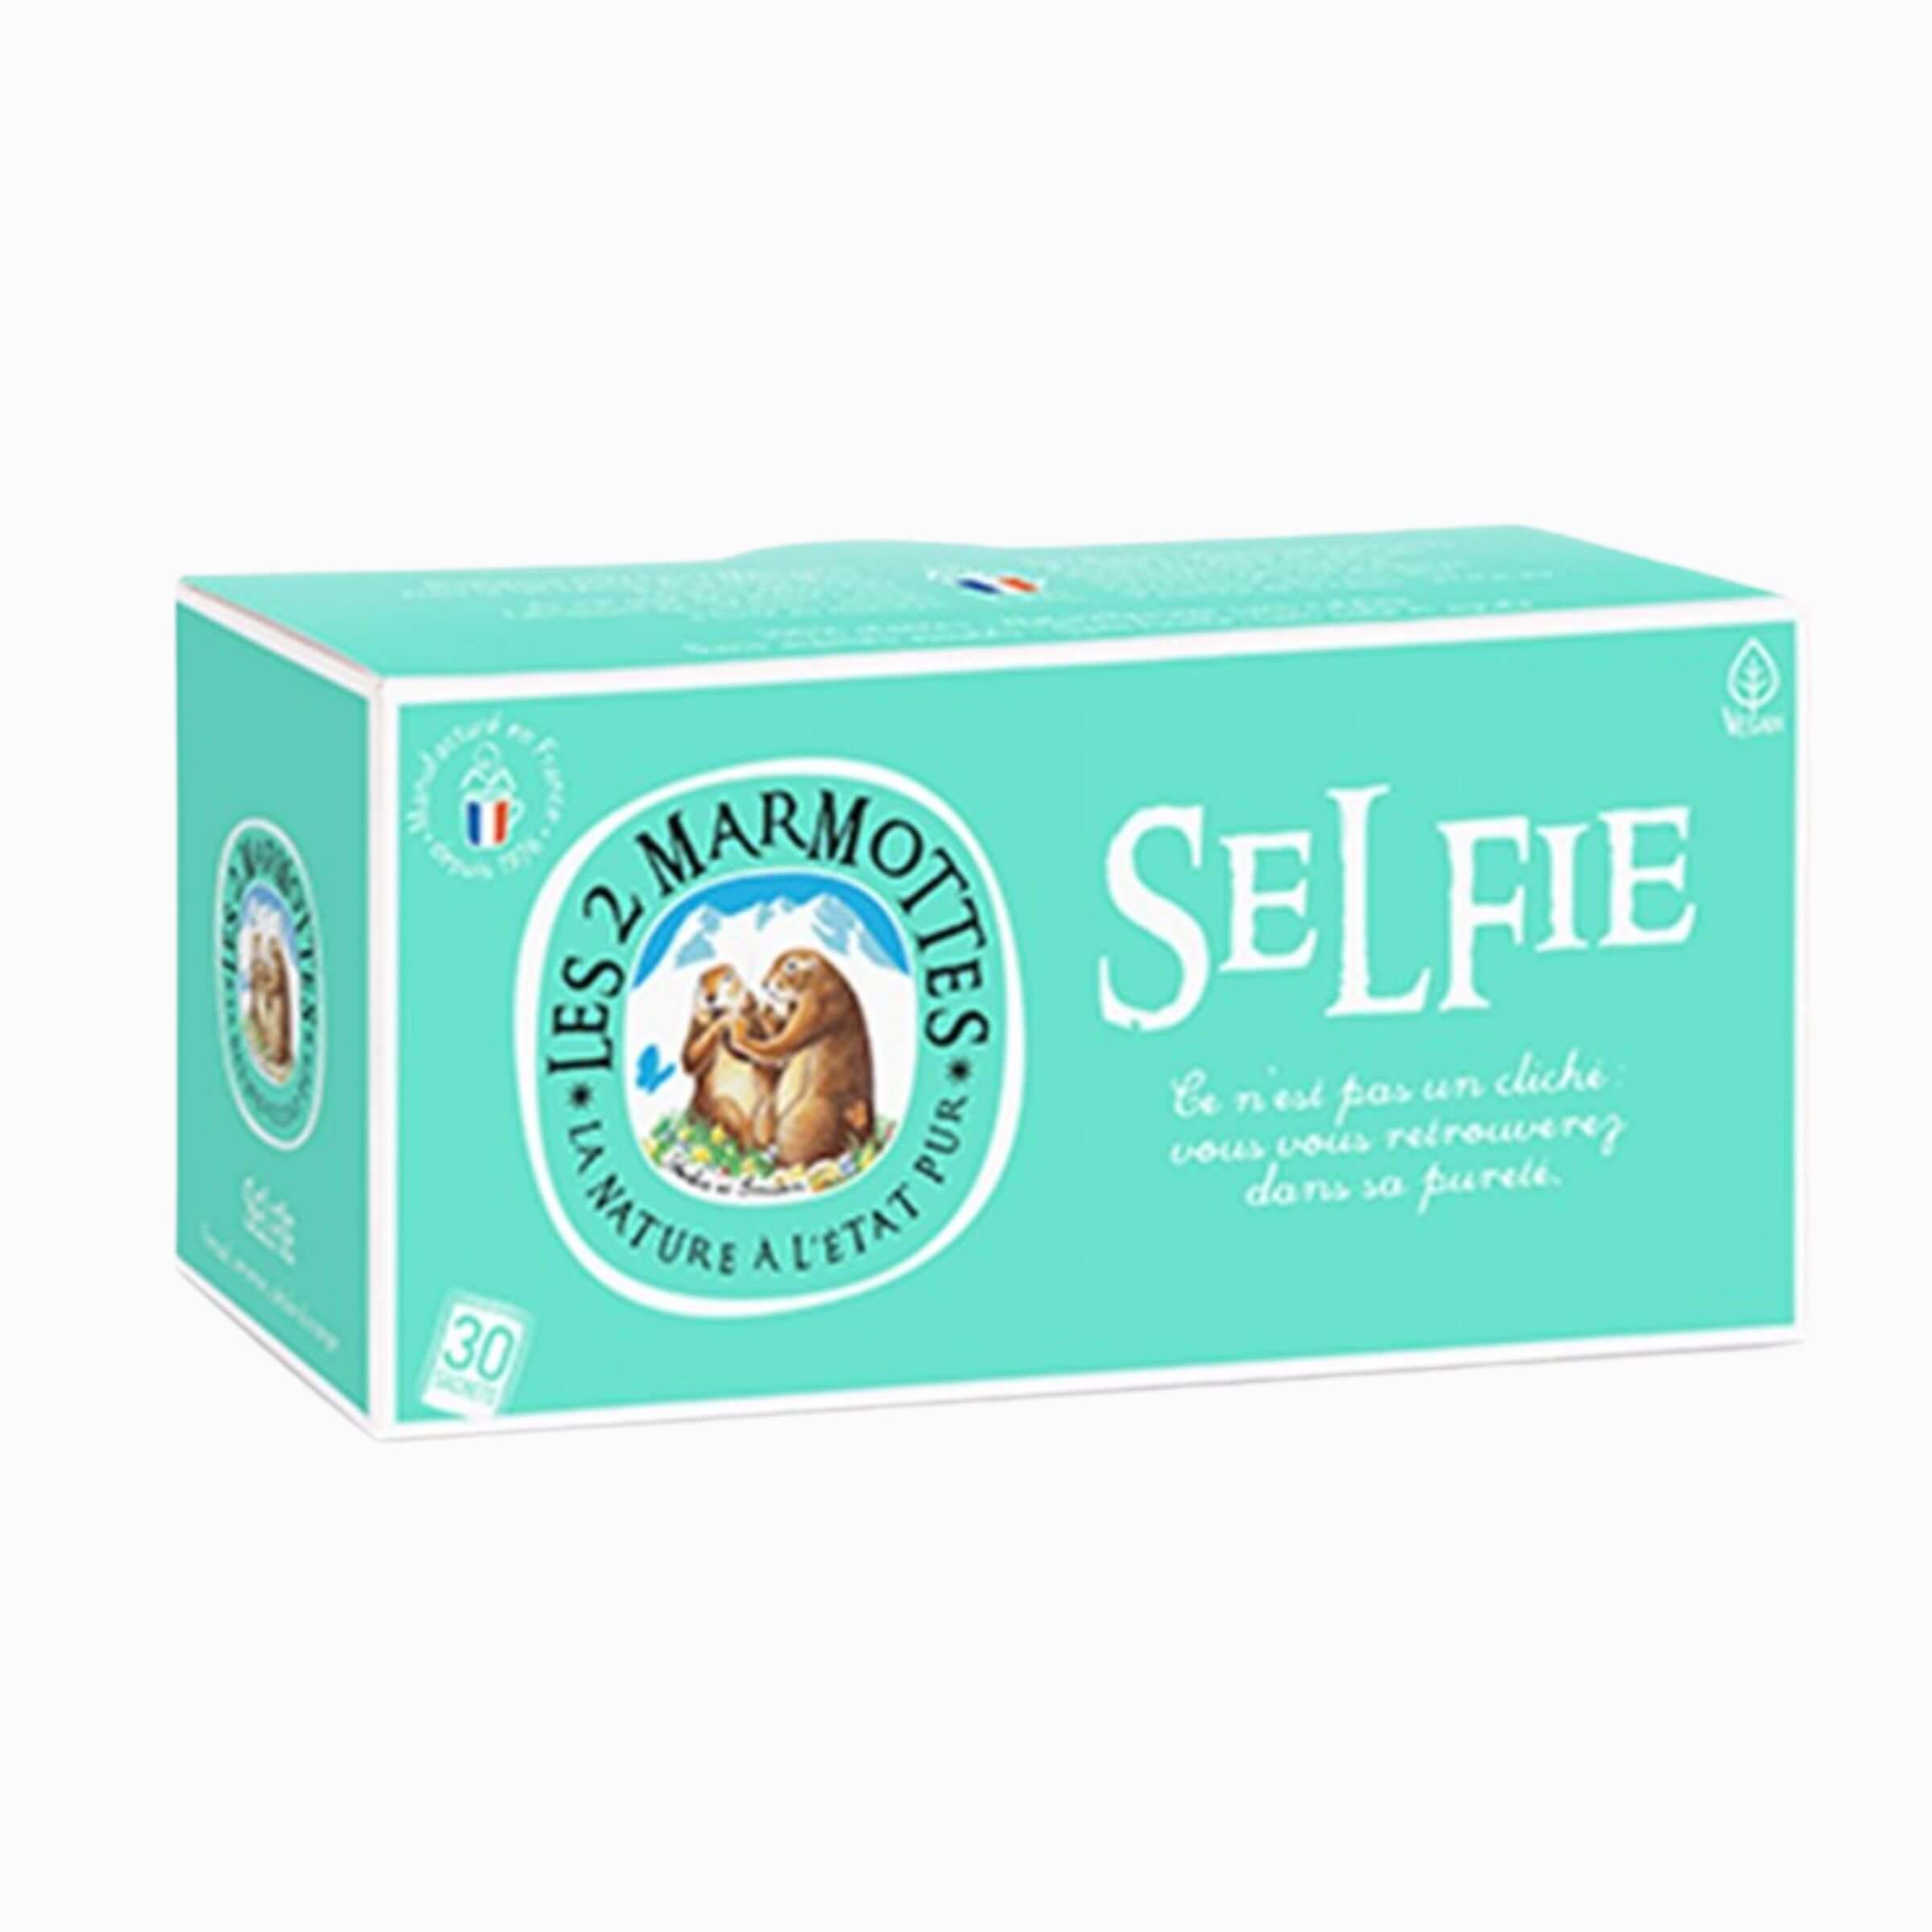 La tisane Selfie Les 2 Marmottes n'est plus commercialisée